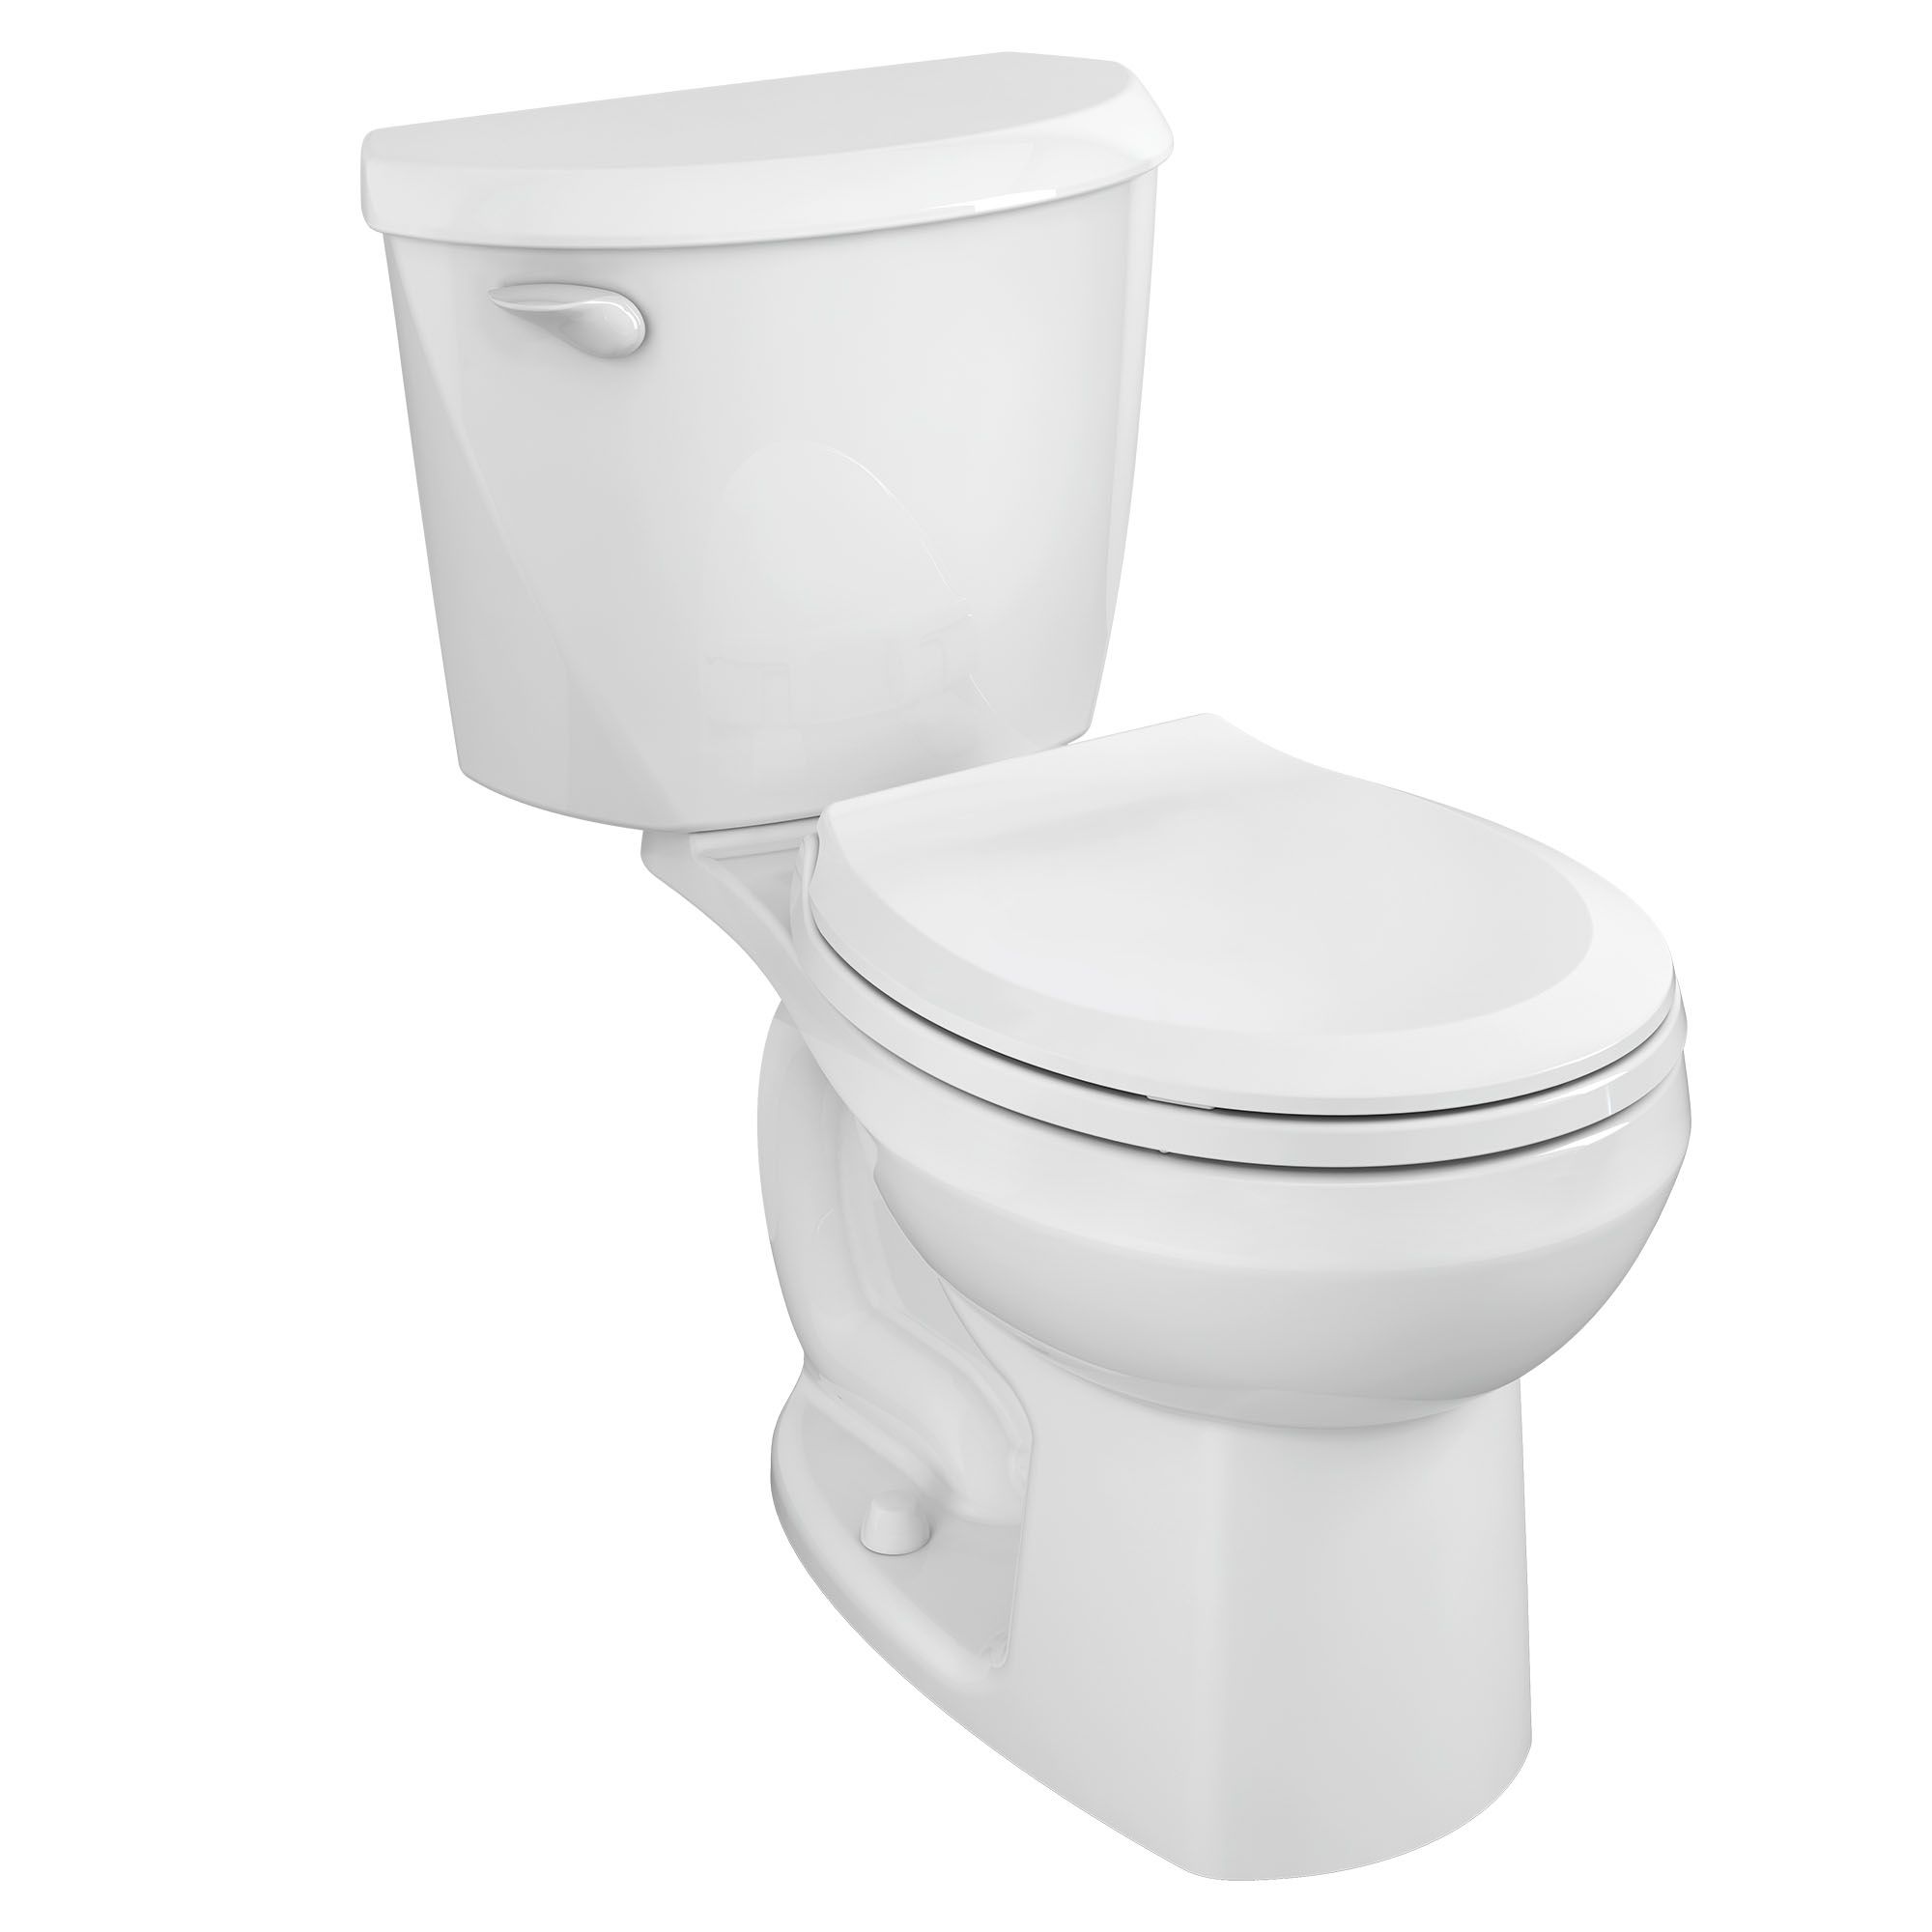 Toilette ColonyMC 3, 2 pièces, 1,28 gpc/4,8 lpc, à cuvette au devant rond à hauteur régulière, sans siège